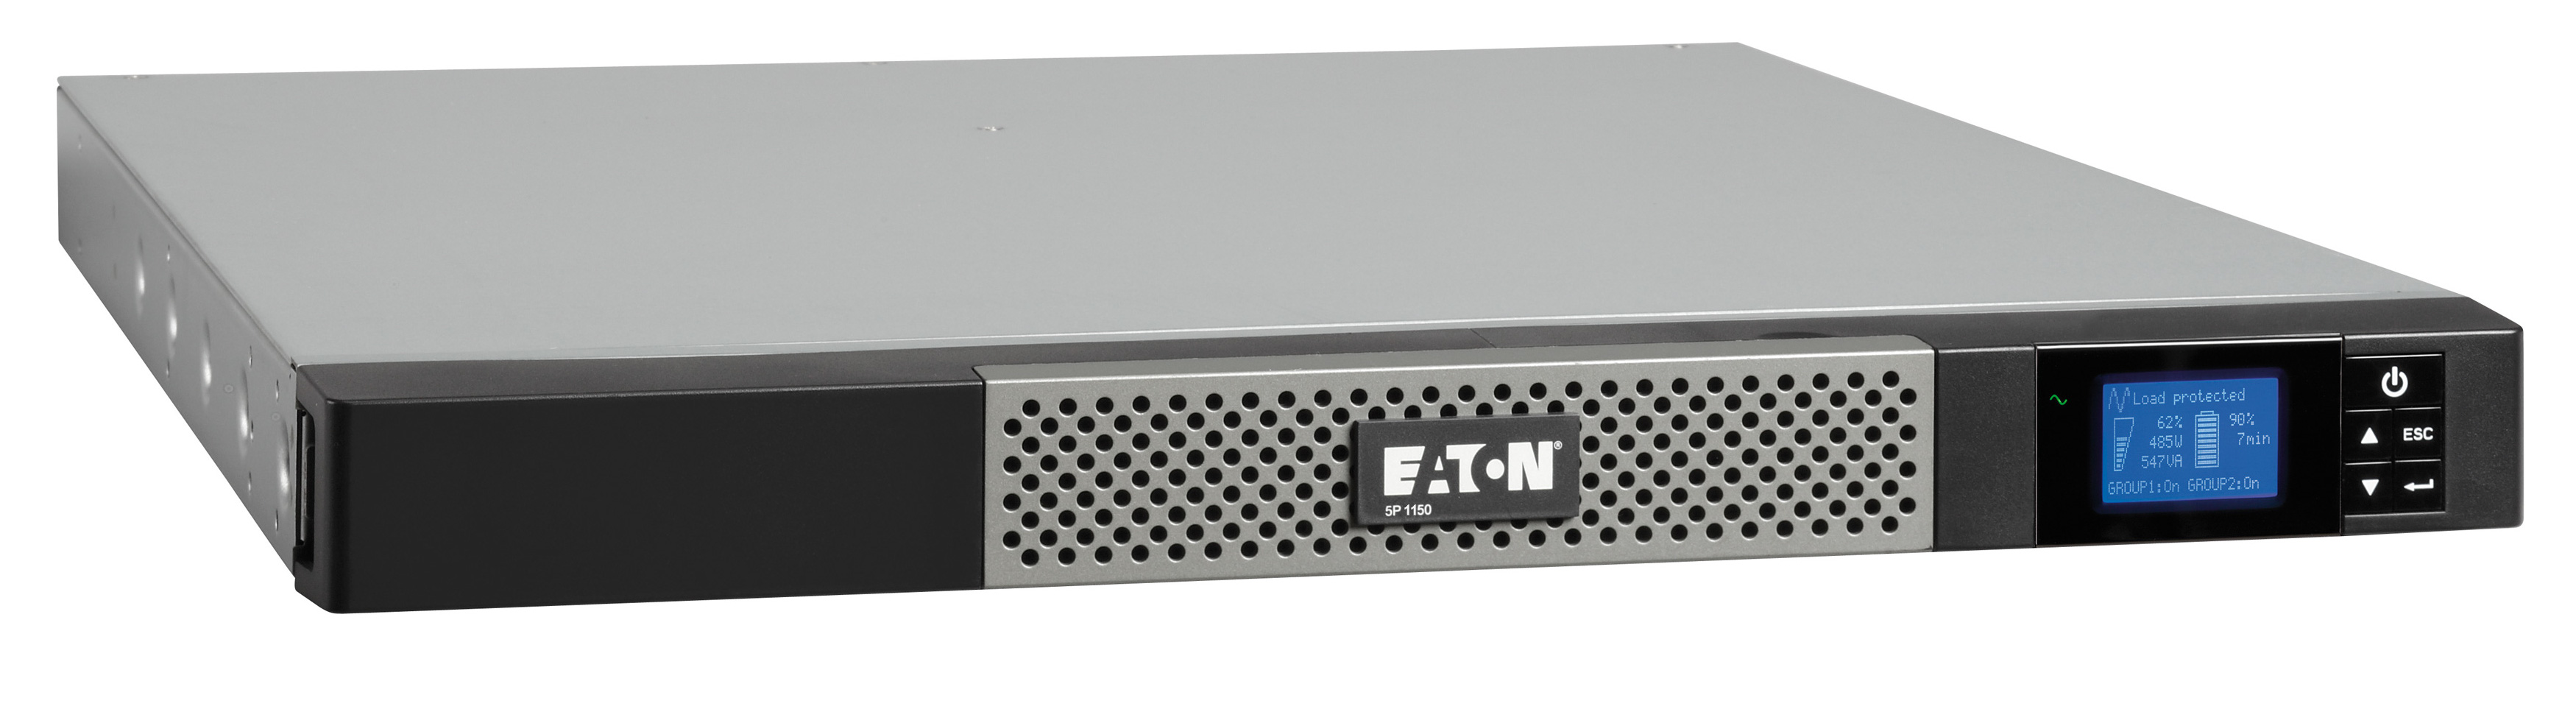 ИБП Eaton 5P 1150iR, 1150VA, 770W, IEC, розеток - 6, USB, черный (5P1150iR)